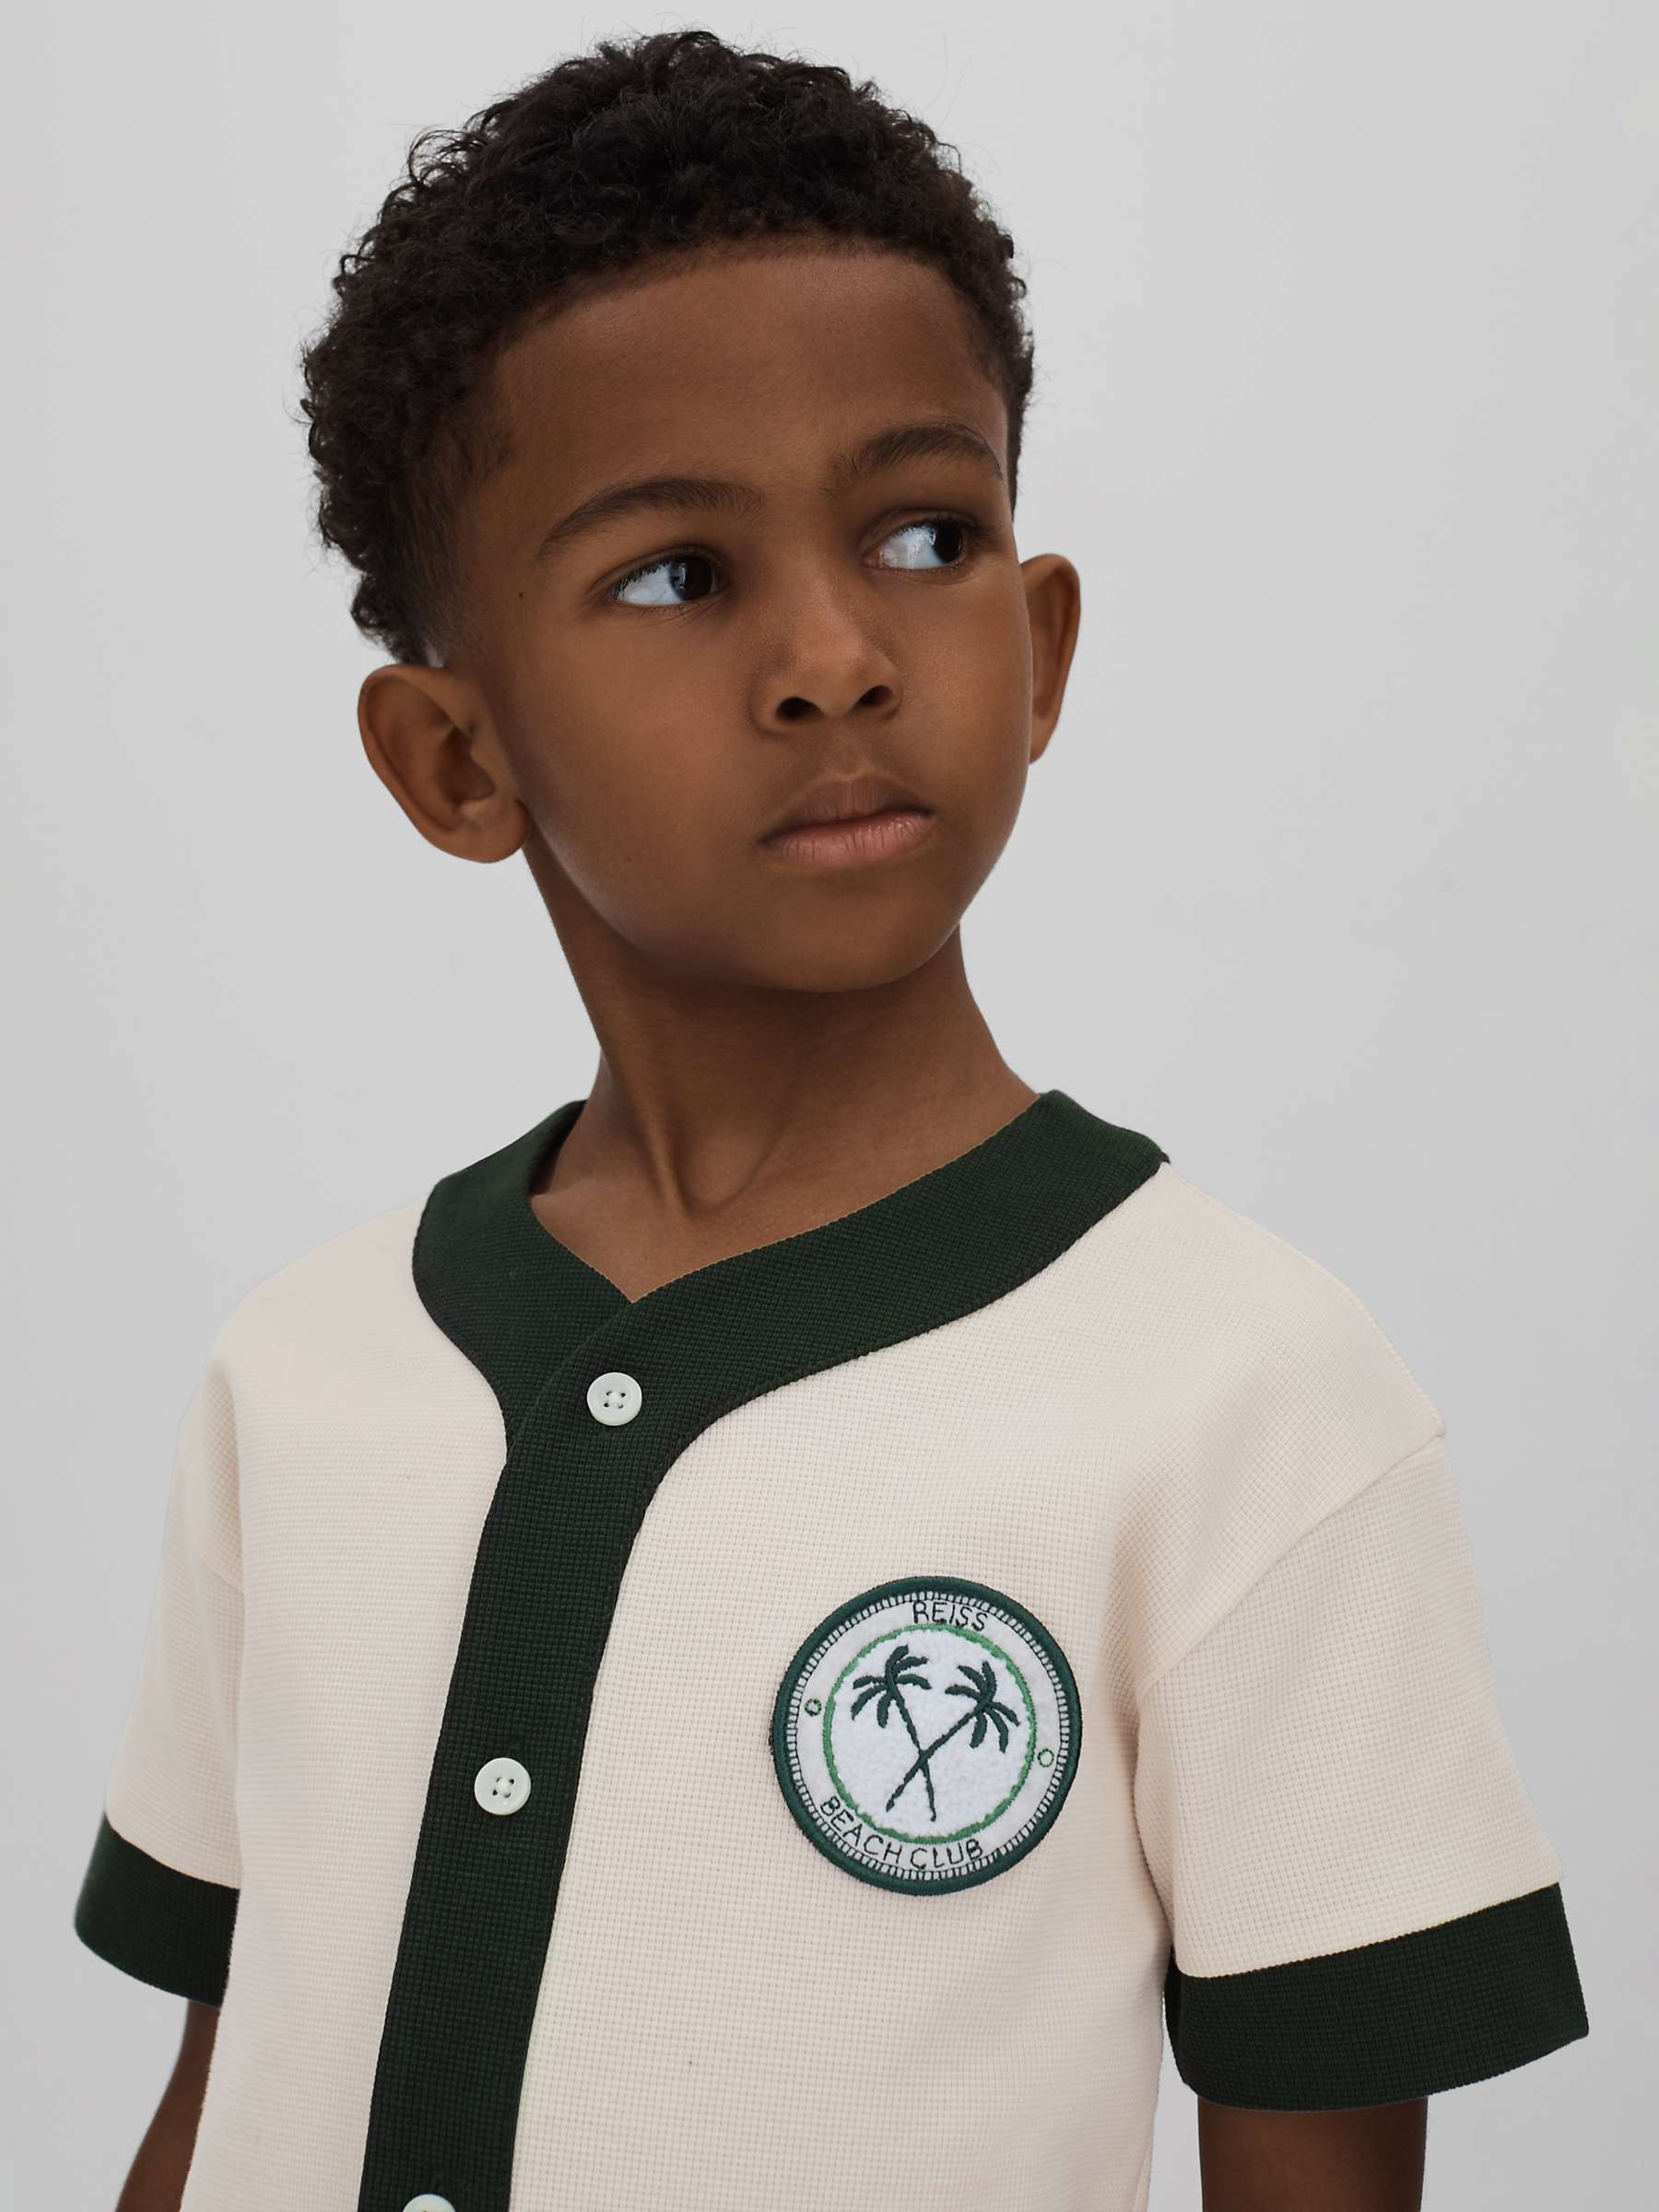 Buy Reiss Kids' Ark Baseball Button Through Short Sleeve Shirt Online at johnlewis.com